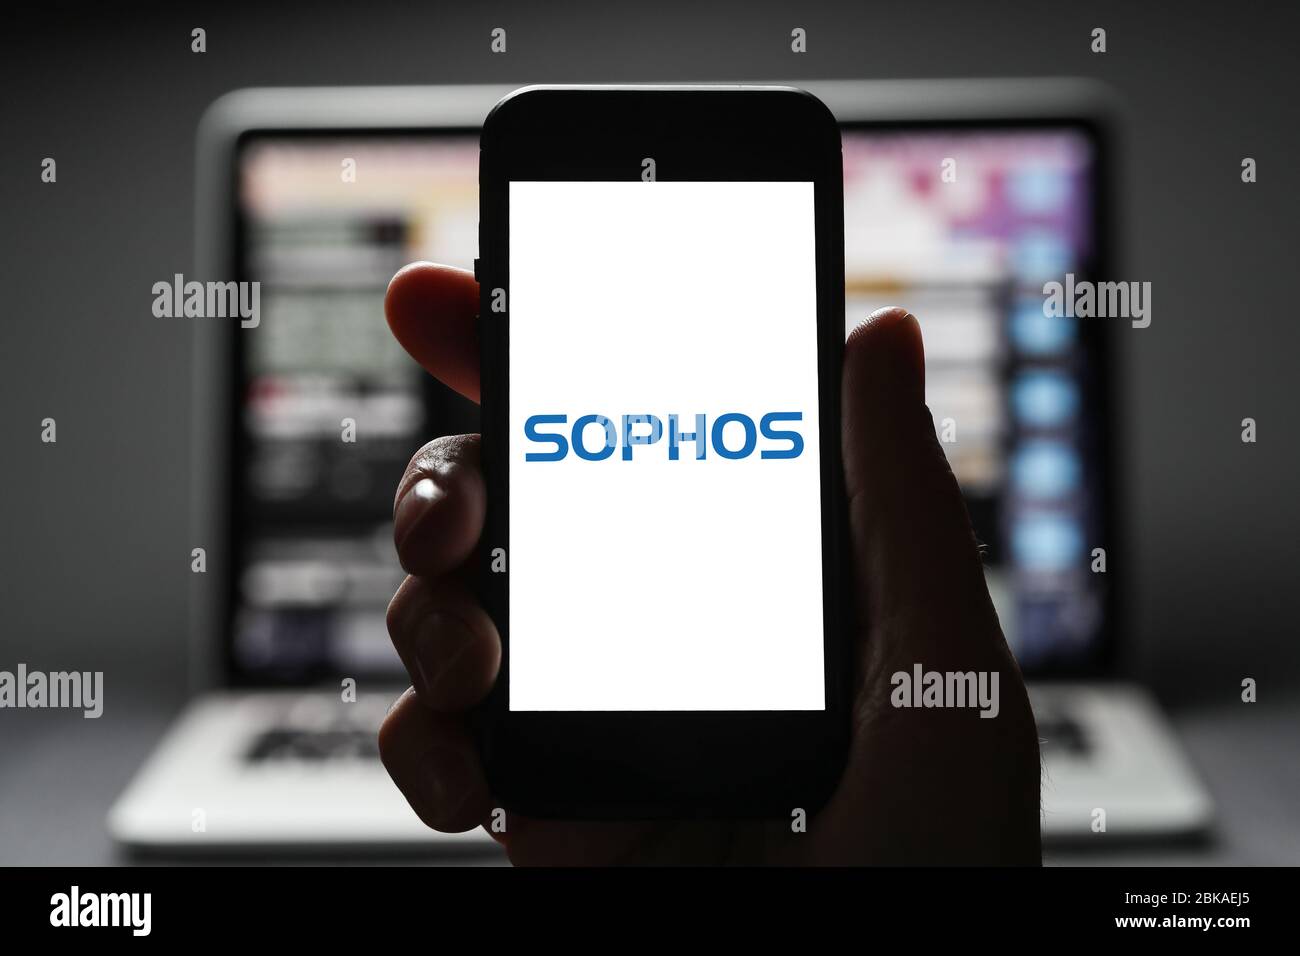 Un uomo che guarda il logo di Sophos sul suo iphone. Sophos è una società di sviluppo di software per la cyber-sicurezza. (Solo per uso editoriale) Foto Stock